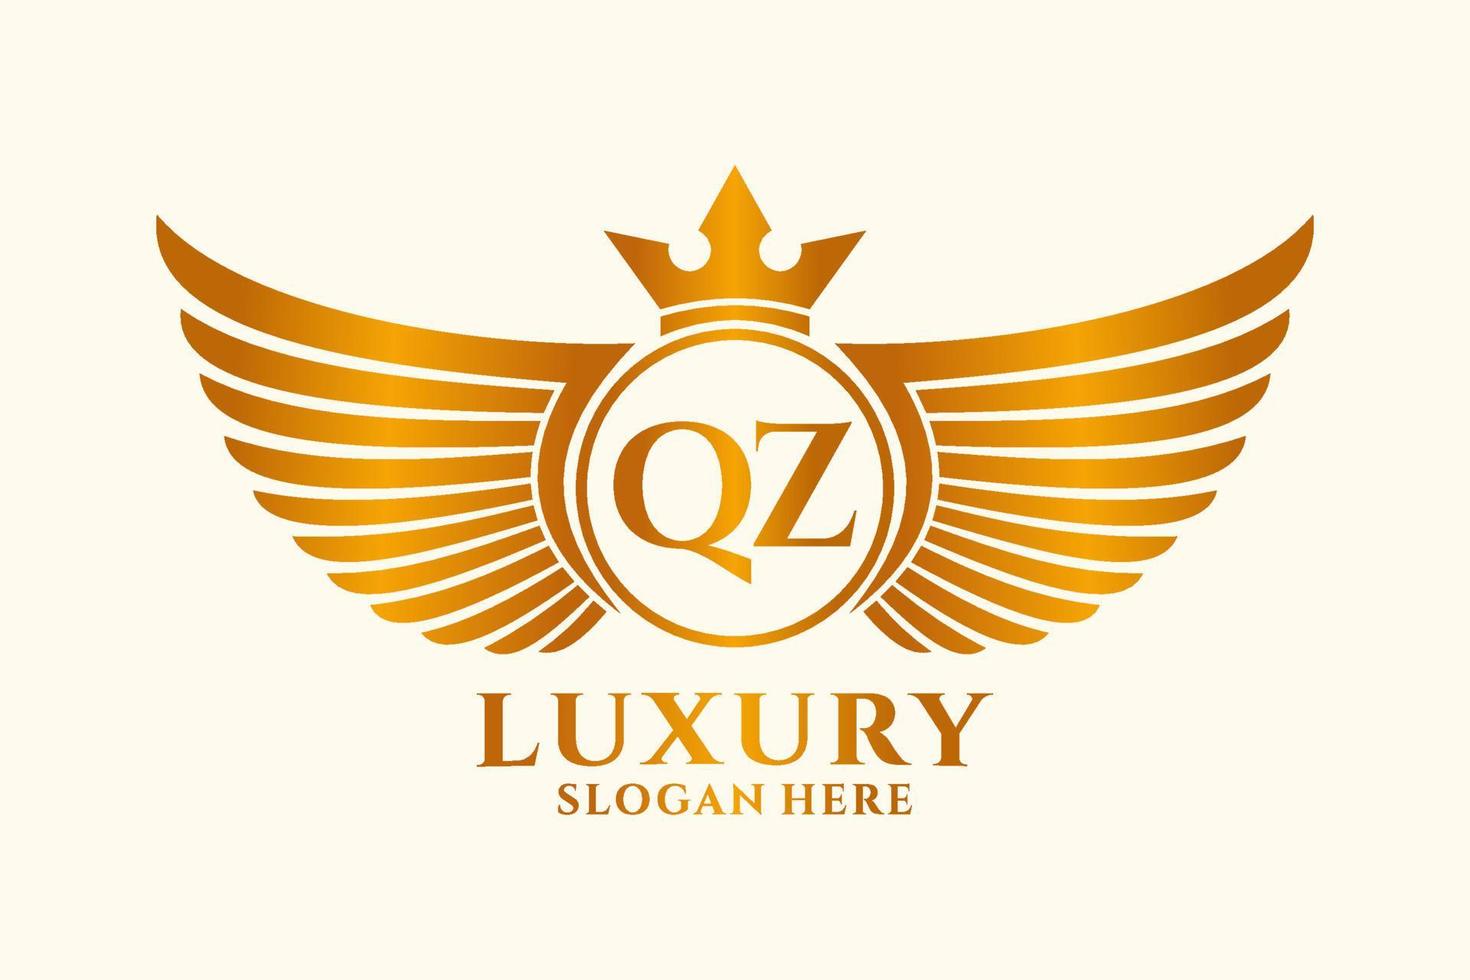 lettre d'aile royale de luxe qz crête logo couleur or vecteur, logo de victoire, logo de crête, logo d'aile, modèle de logo vectoriel. vecteur